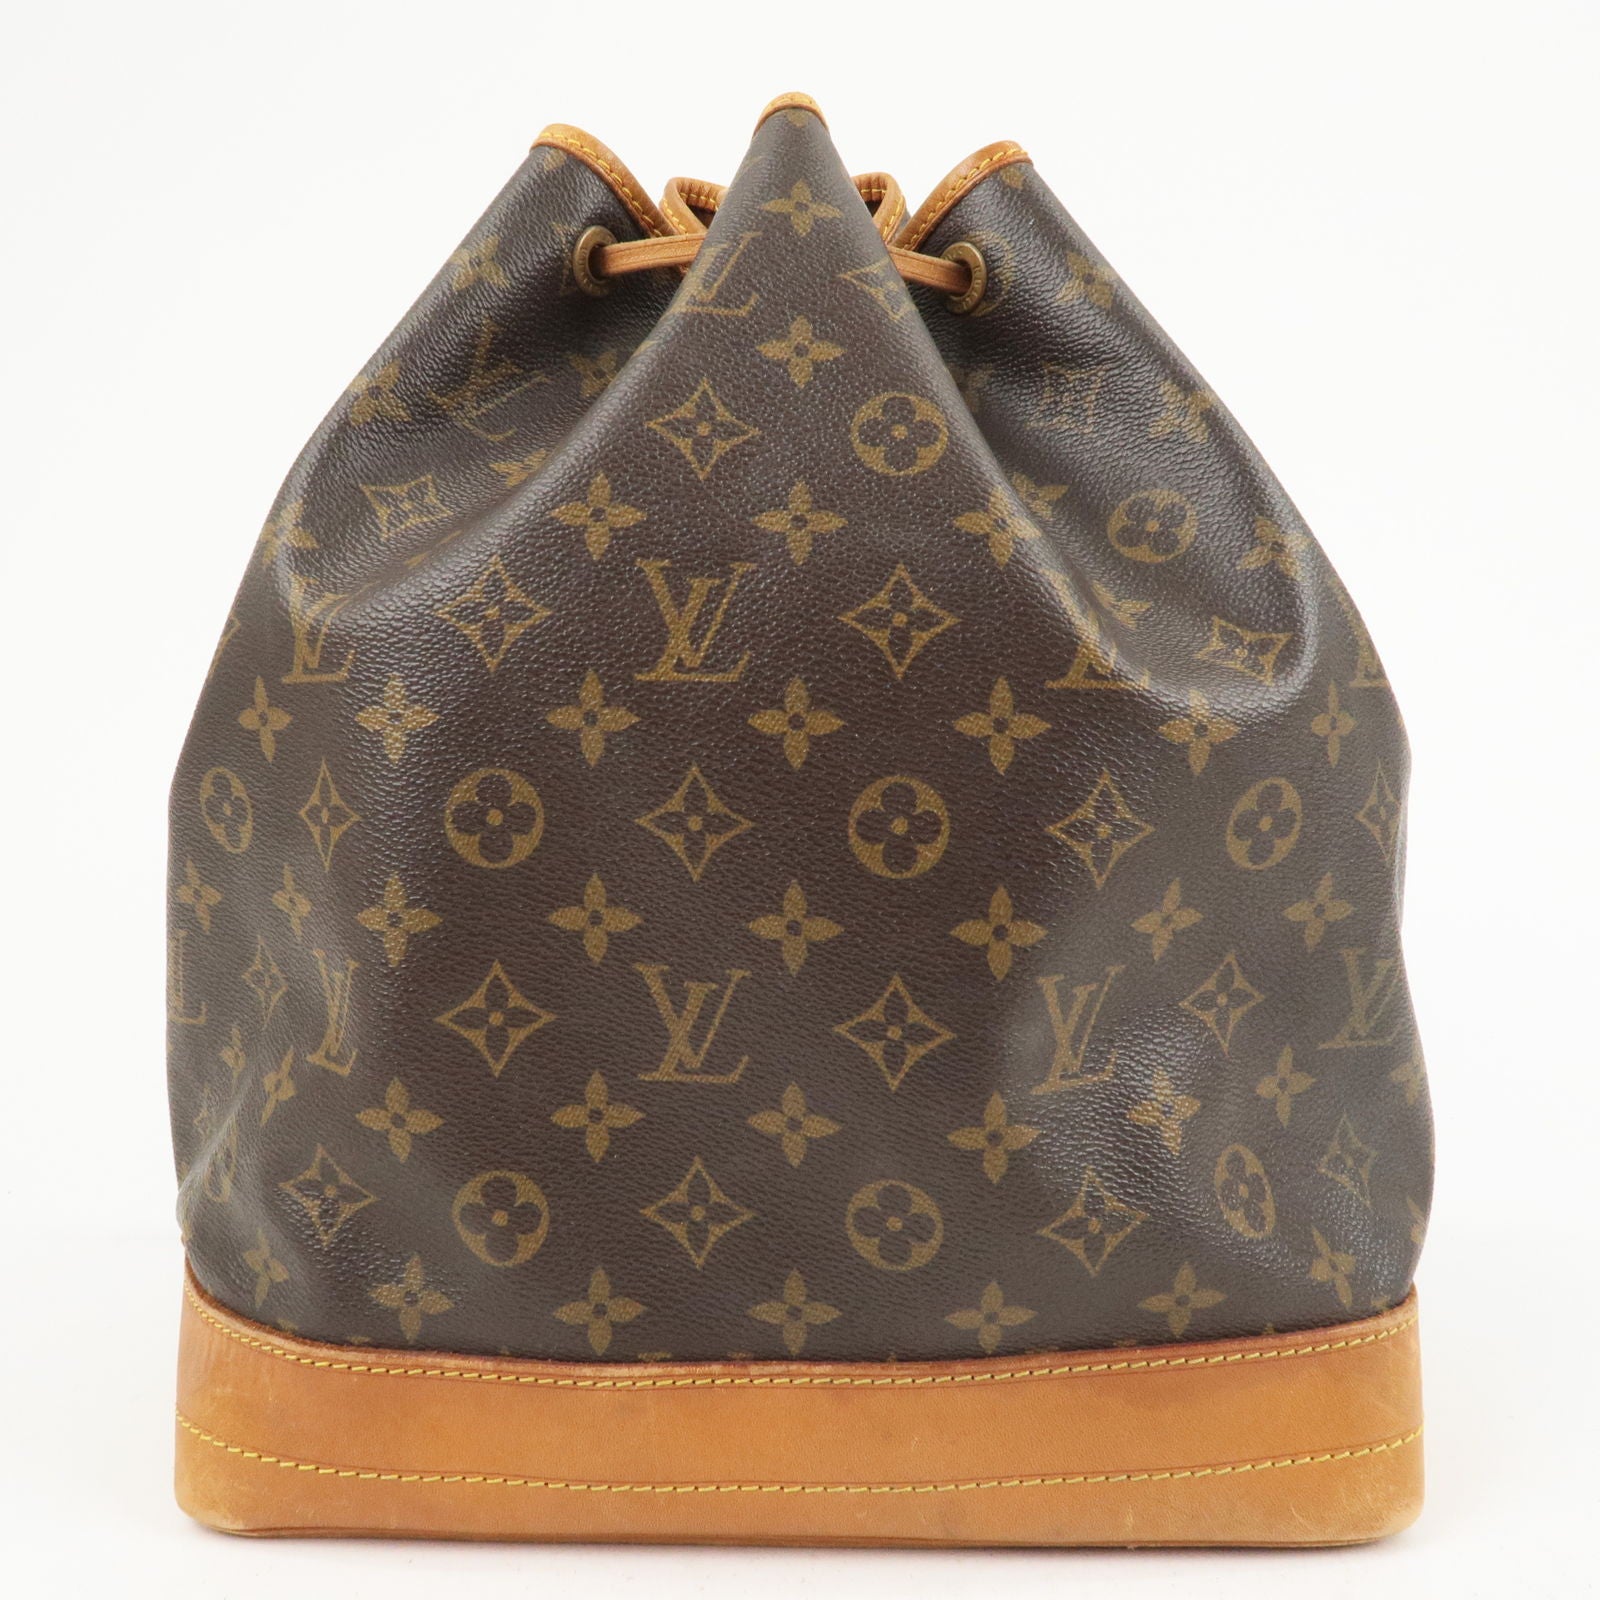 Louis Vuitton The Sirius Travel Bag Charm Key Chain